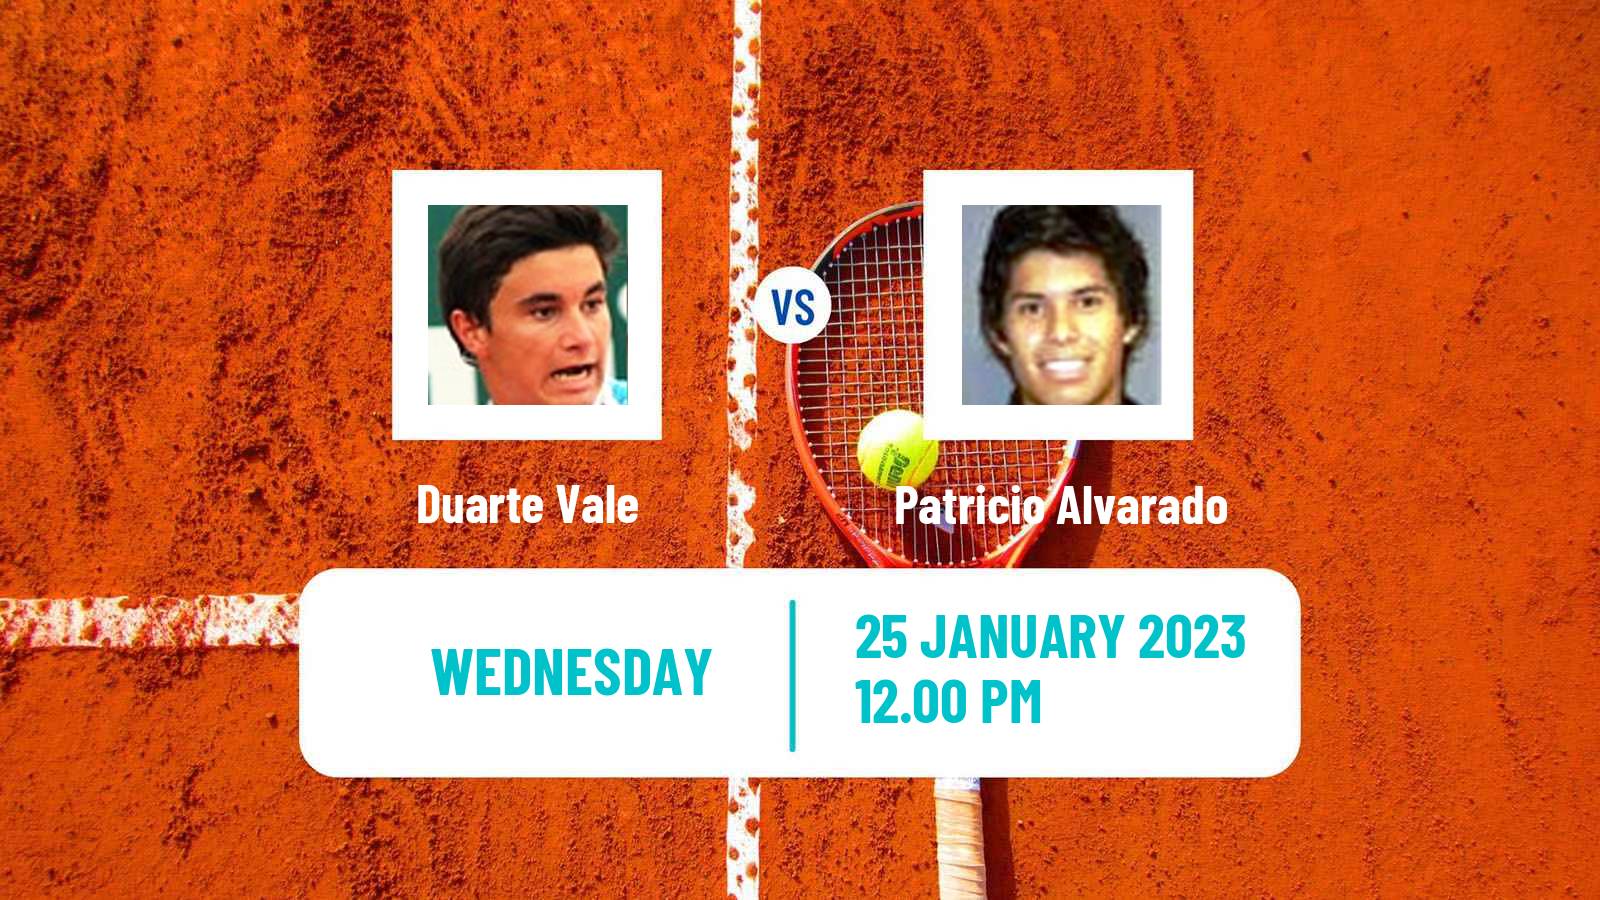 Tennis ITF Tournaments Duarte Vale - Patricio Alvarado